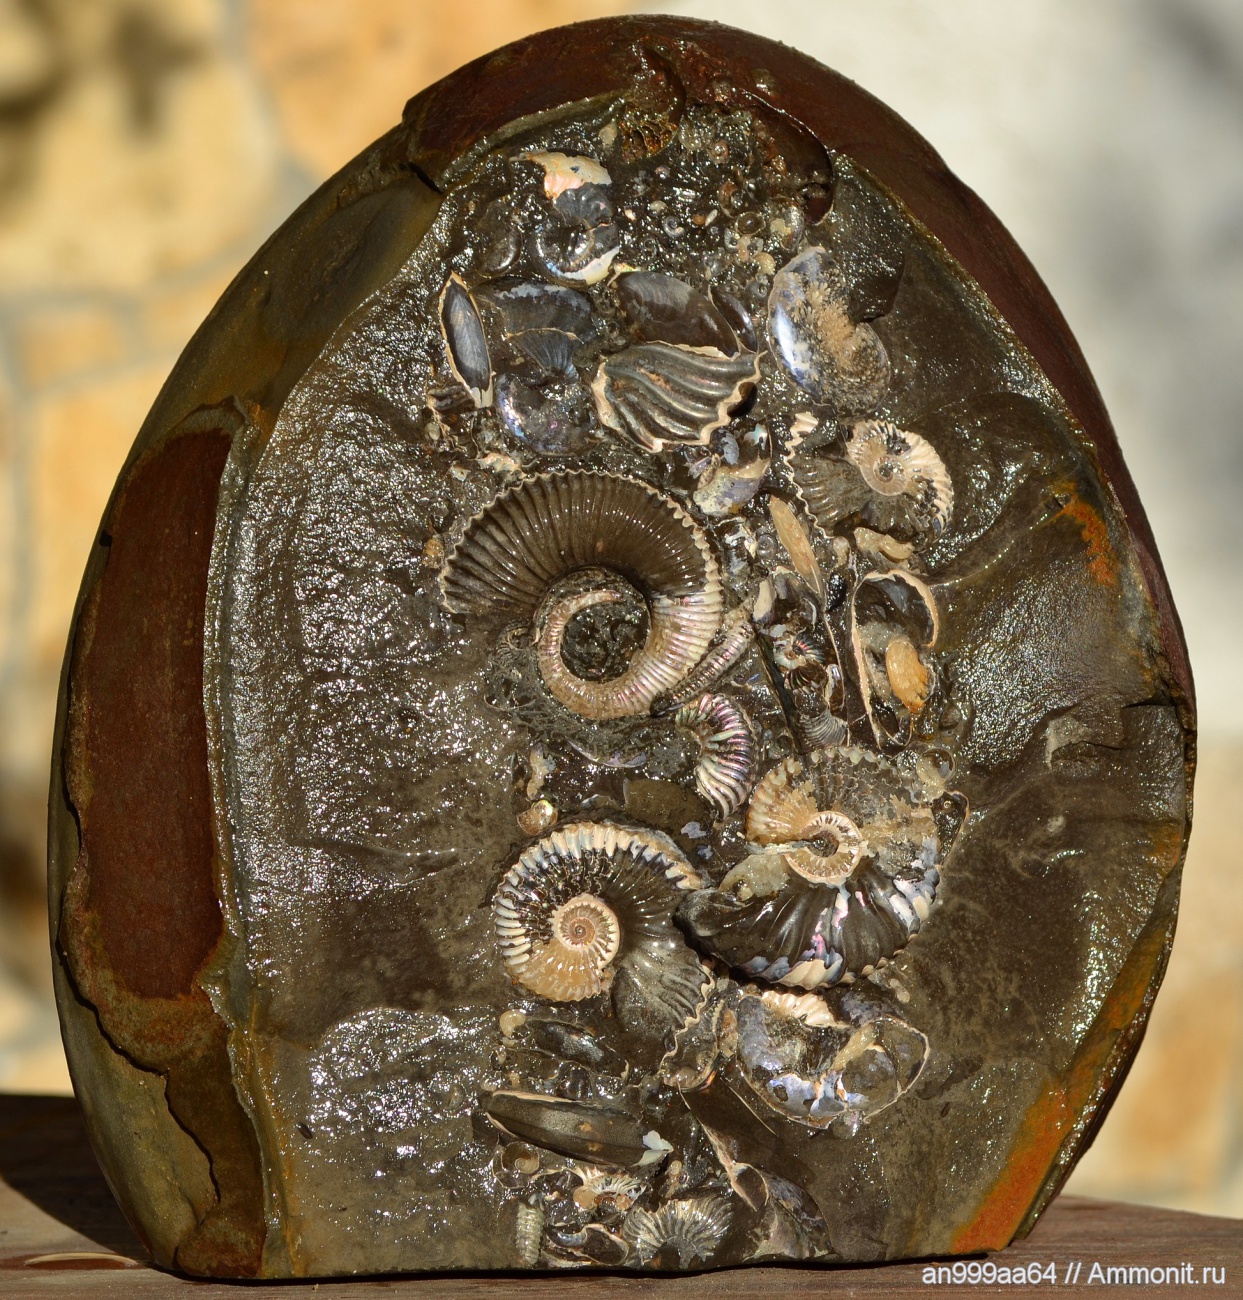 Моллюск в камне. Окаменелый Аммонит. Аммонит окаменелость. Окаменелые моллюски аммониты. Окаменевшие раковины аммониты.